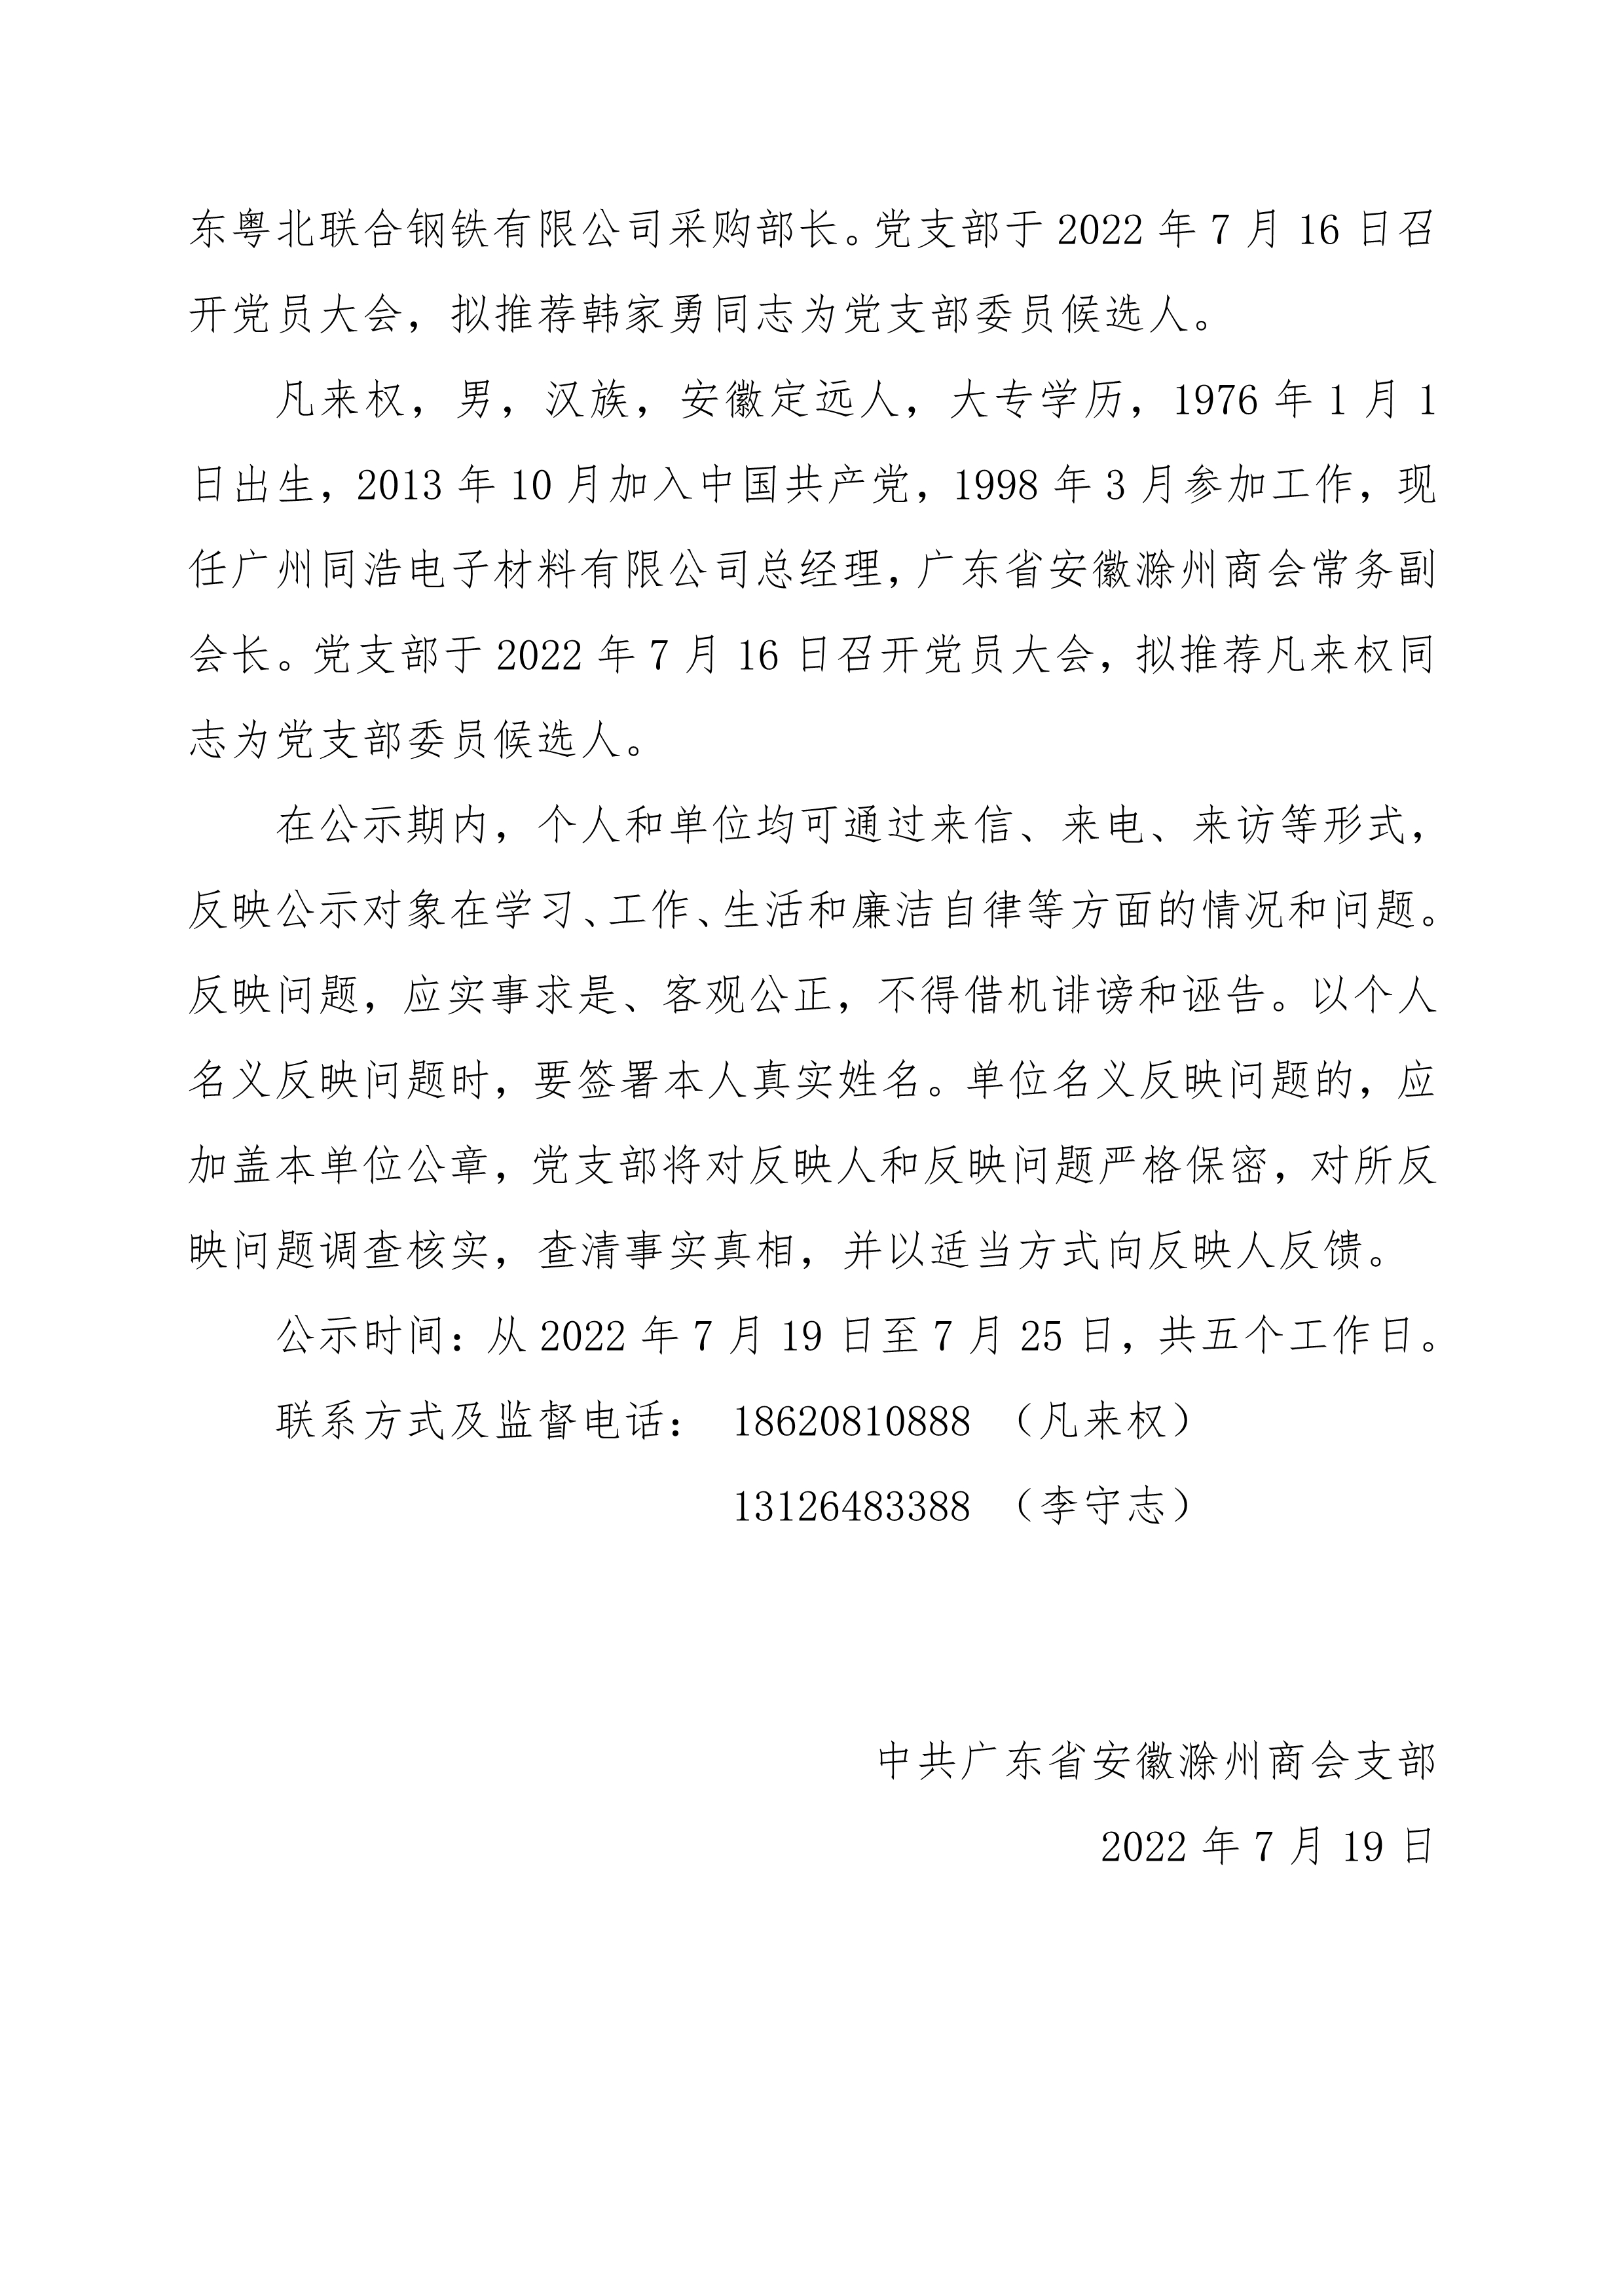 关于拟将王健等同志推荐为书记委员候选人的公示_2.Jpeg